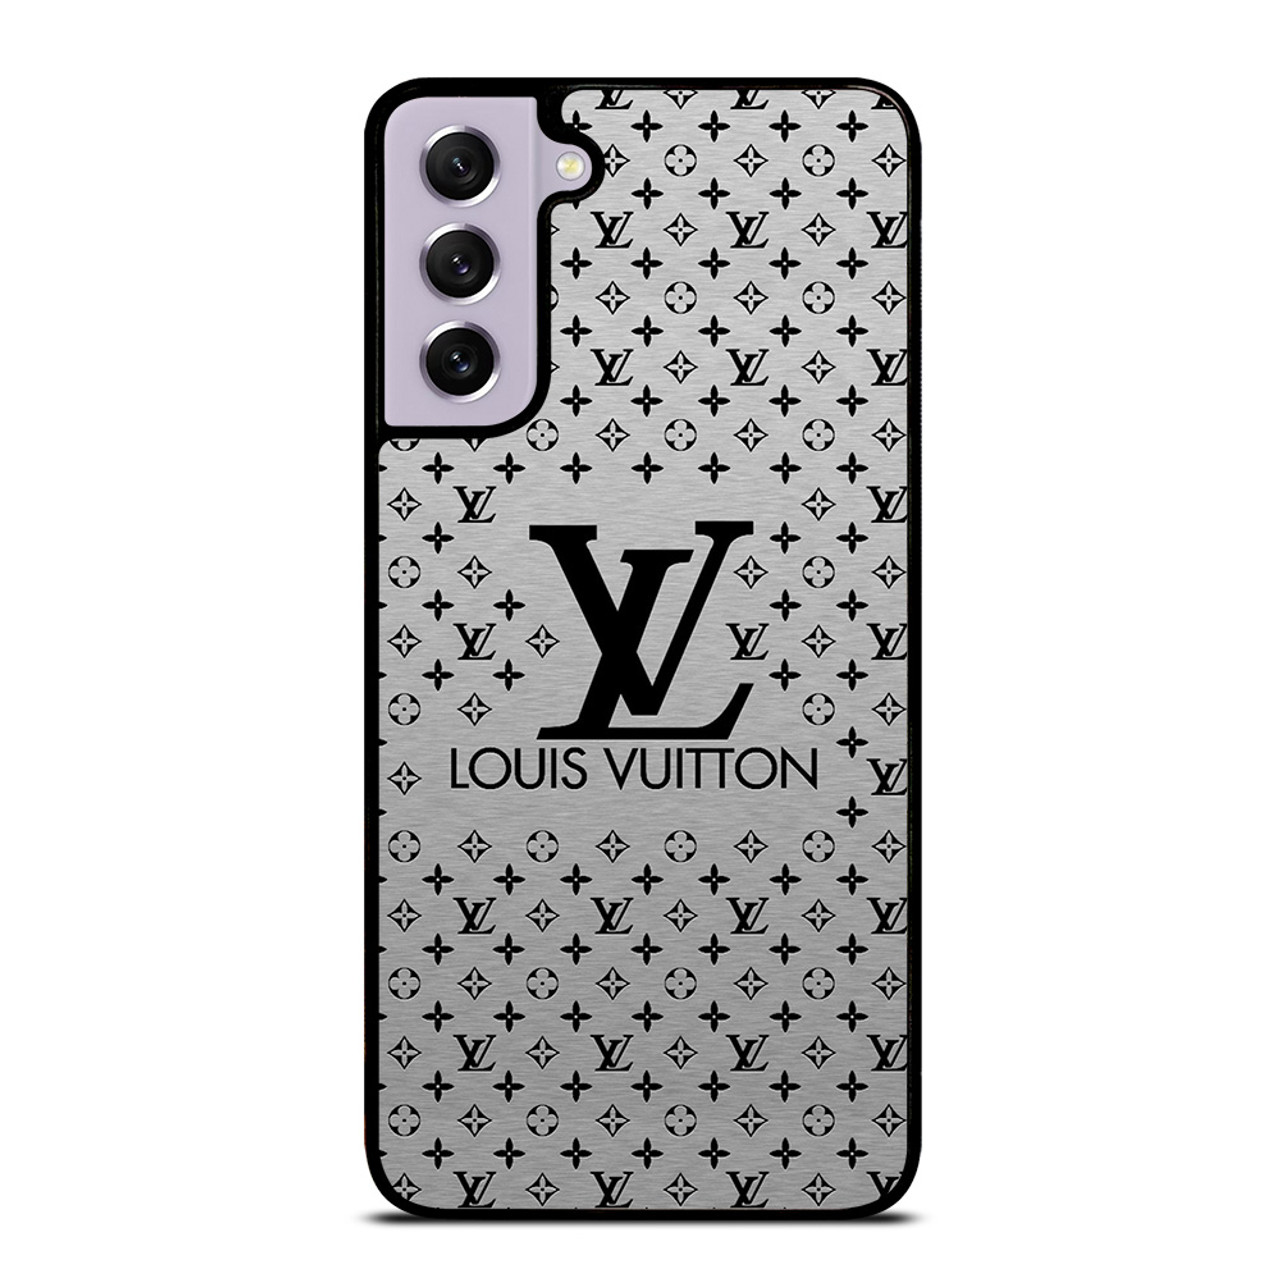 LOUIS VUITTON 1 Samsung Galaxy S21 FE Case Cover